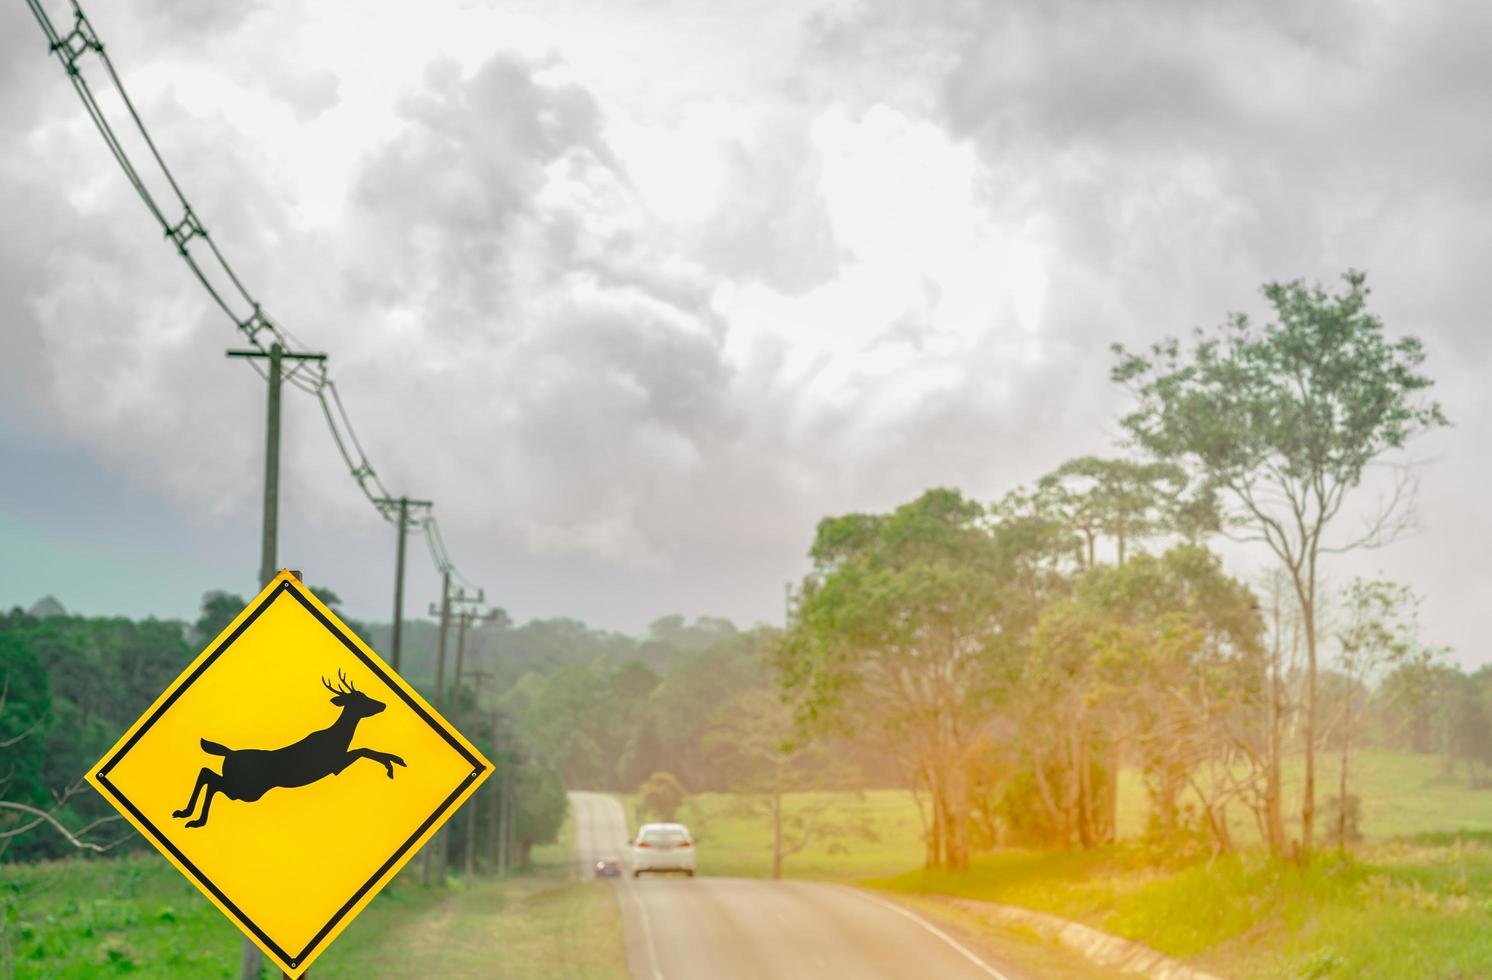 voiture suv bleue du touriste conduisant avec prudence pendant le voyage sur la route goudronnée près du panneau de signalisation jaune avec des cerfs sautant à l'intérieur du panneau photo